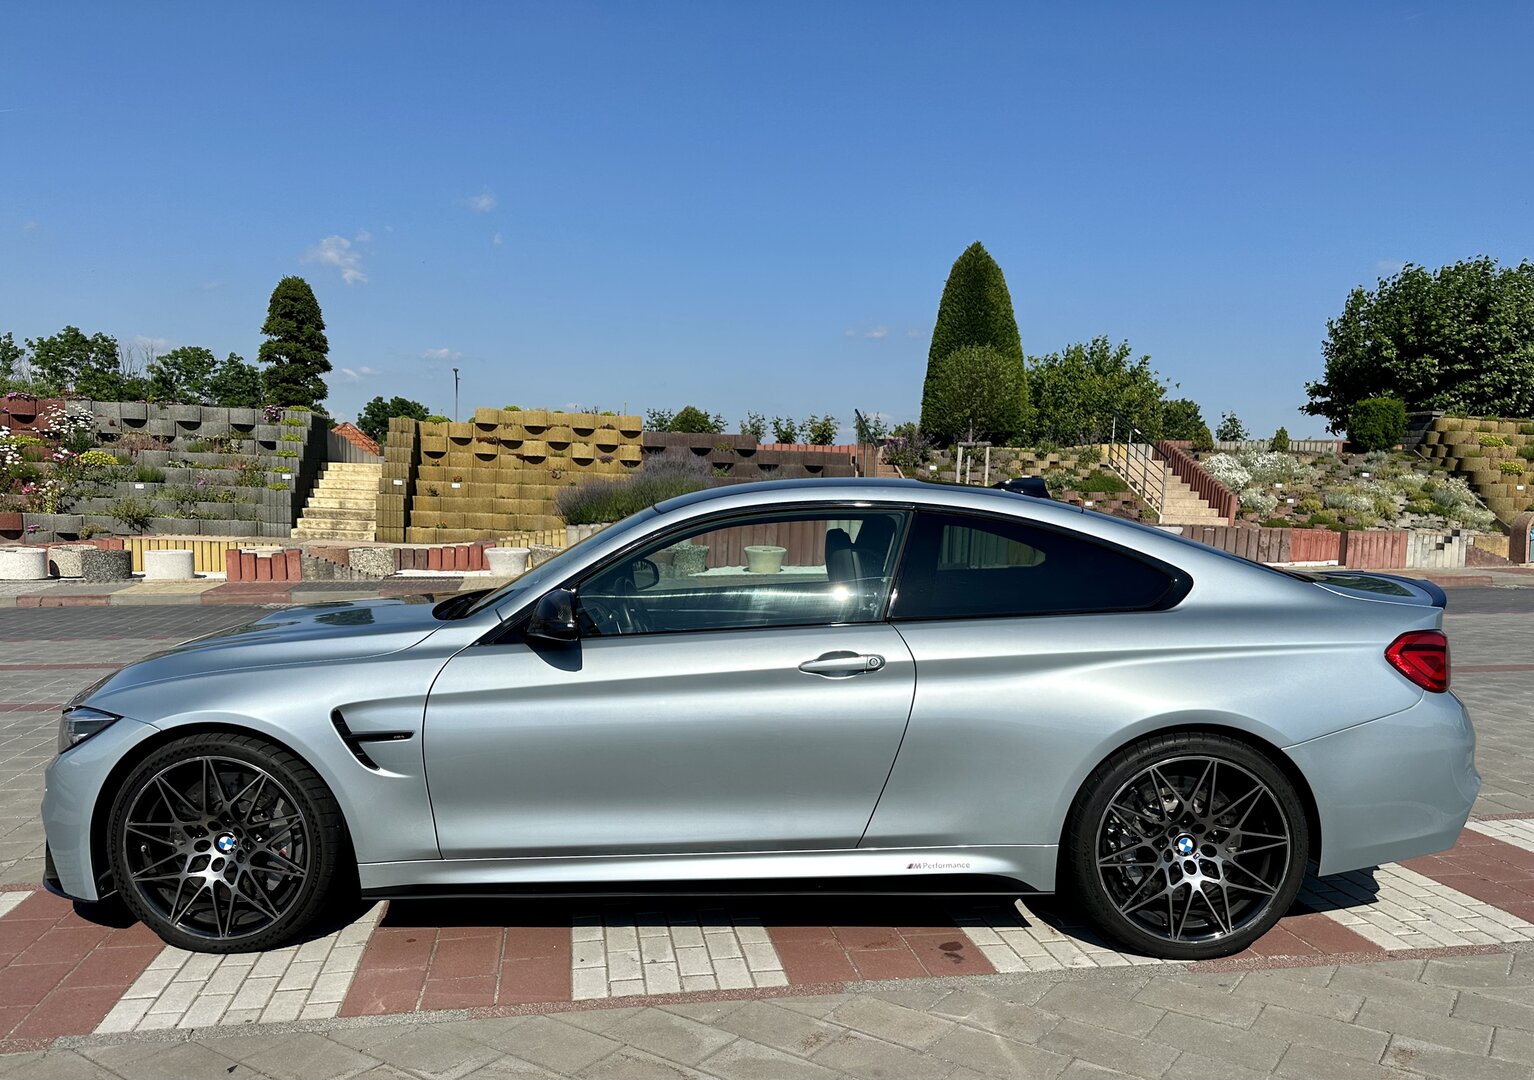 BMW M4 Coupé (F82 LCI) for sale - auto na prodej - Další #